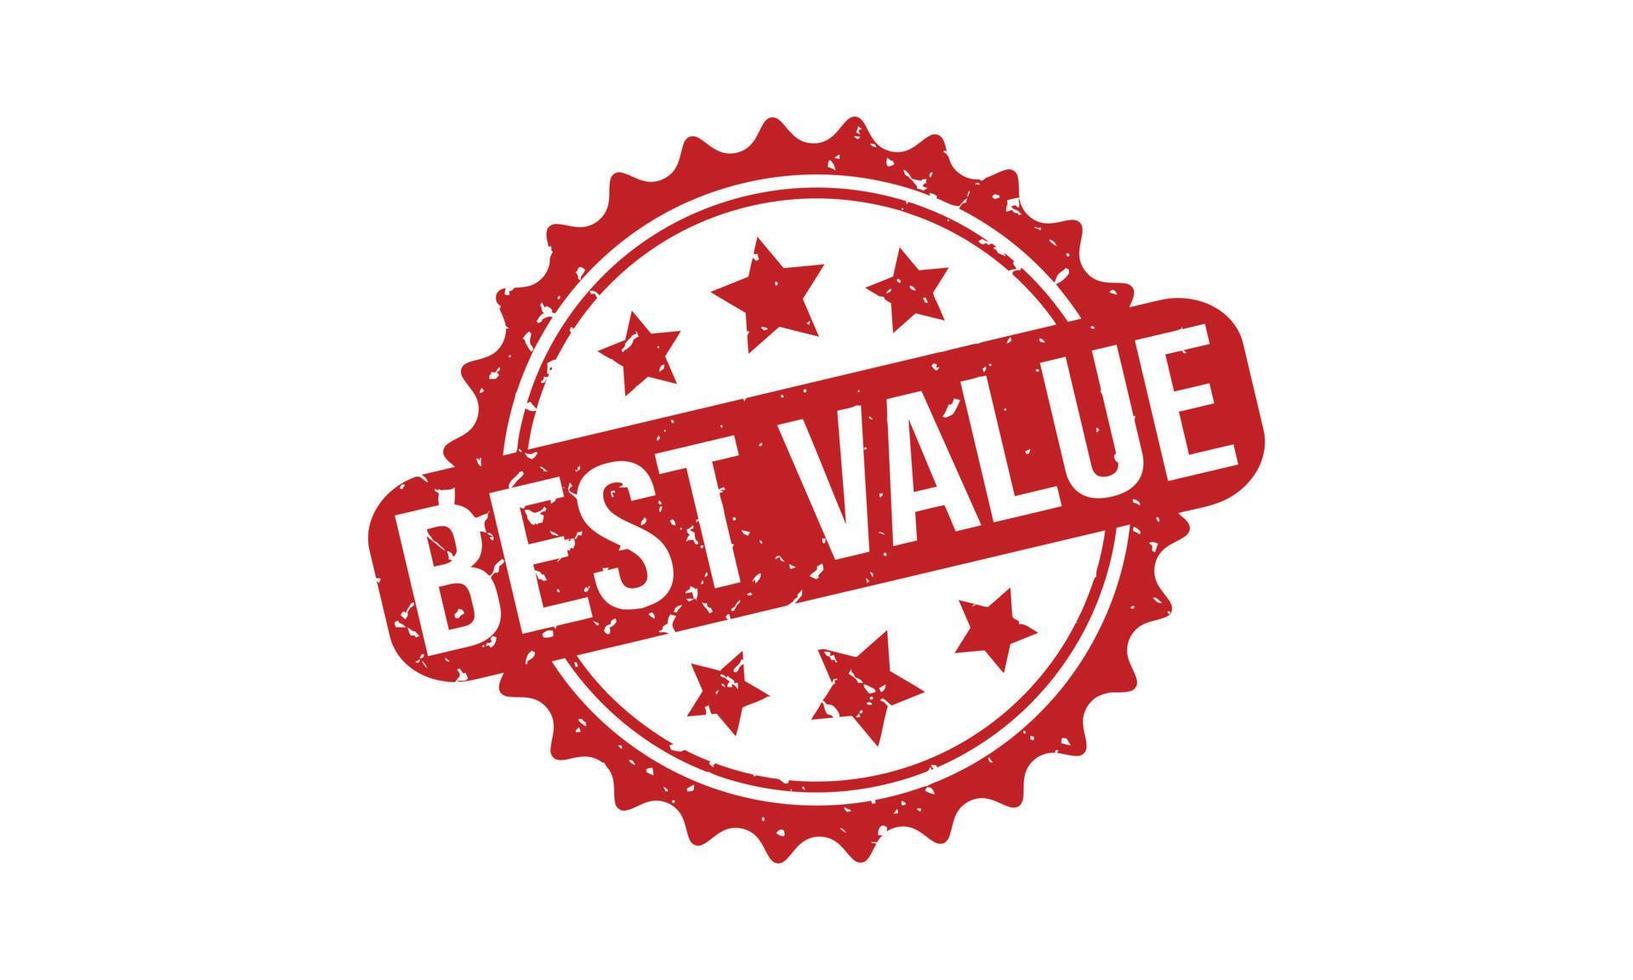 Best Value Rubber Stamp. Red Best Value Rubber Grunge Stamp Seal Vector Illustration